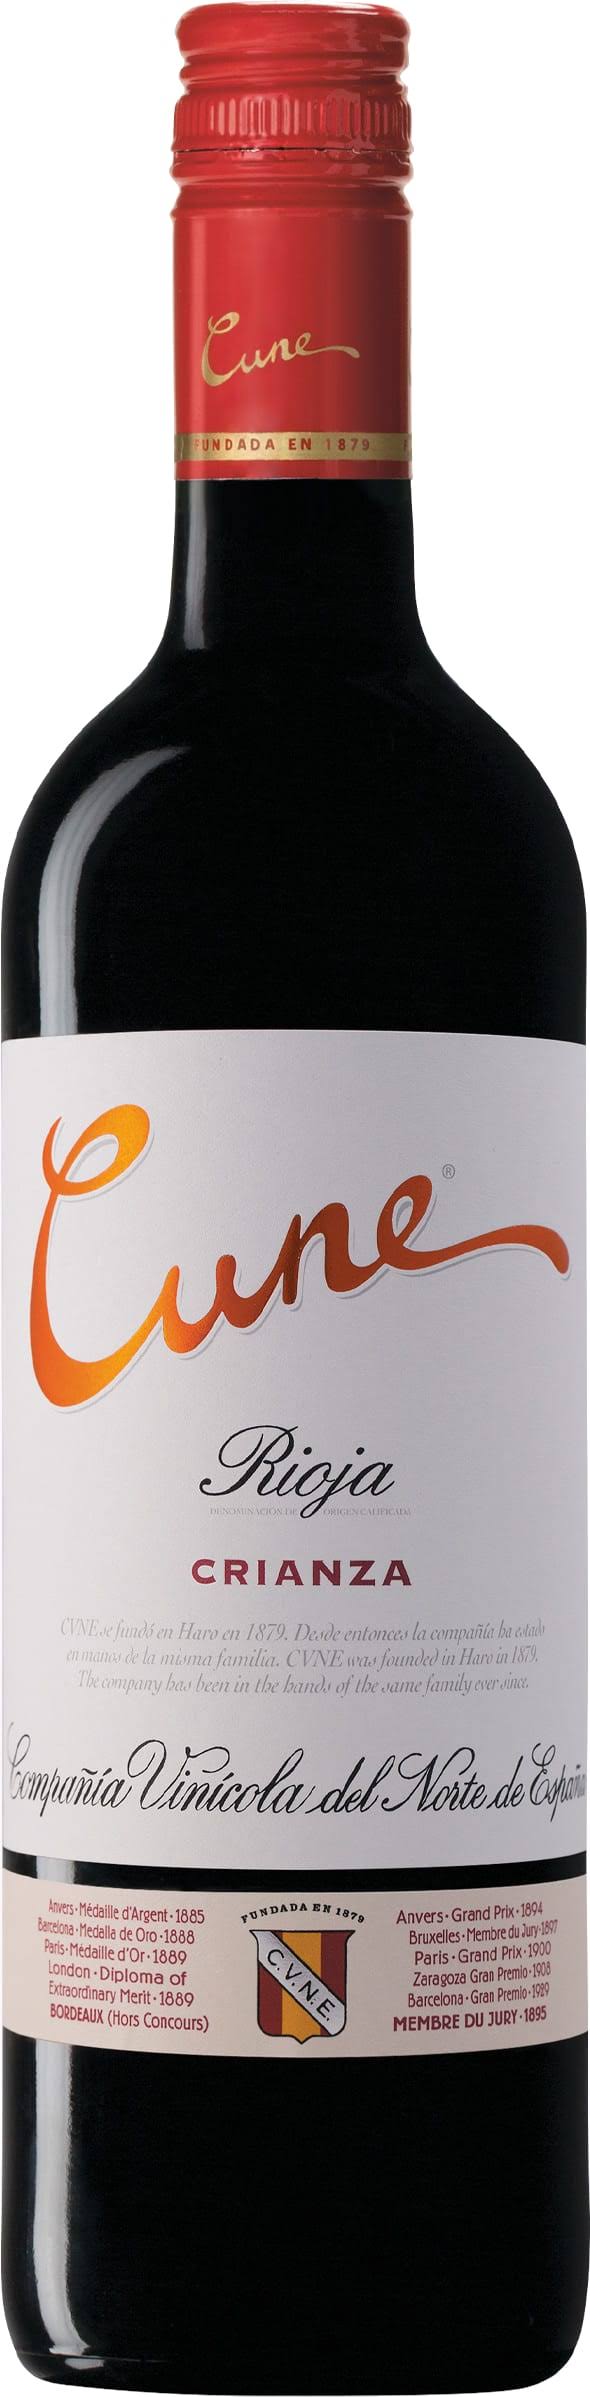 Cune Crianza Rioja 2016 750ml